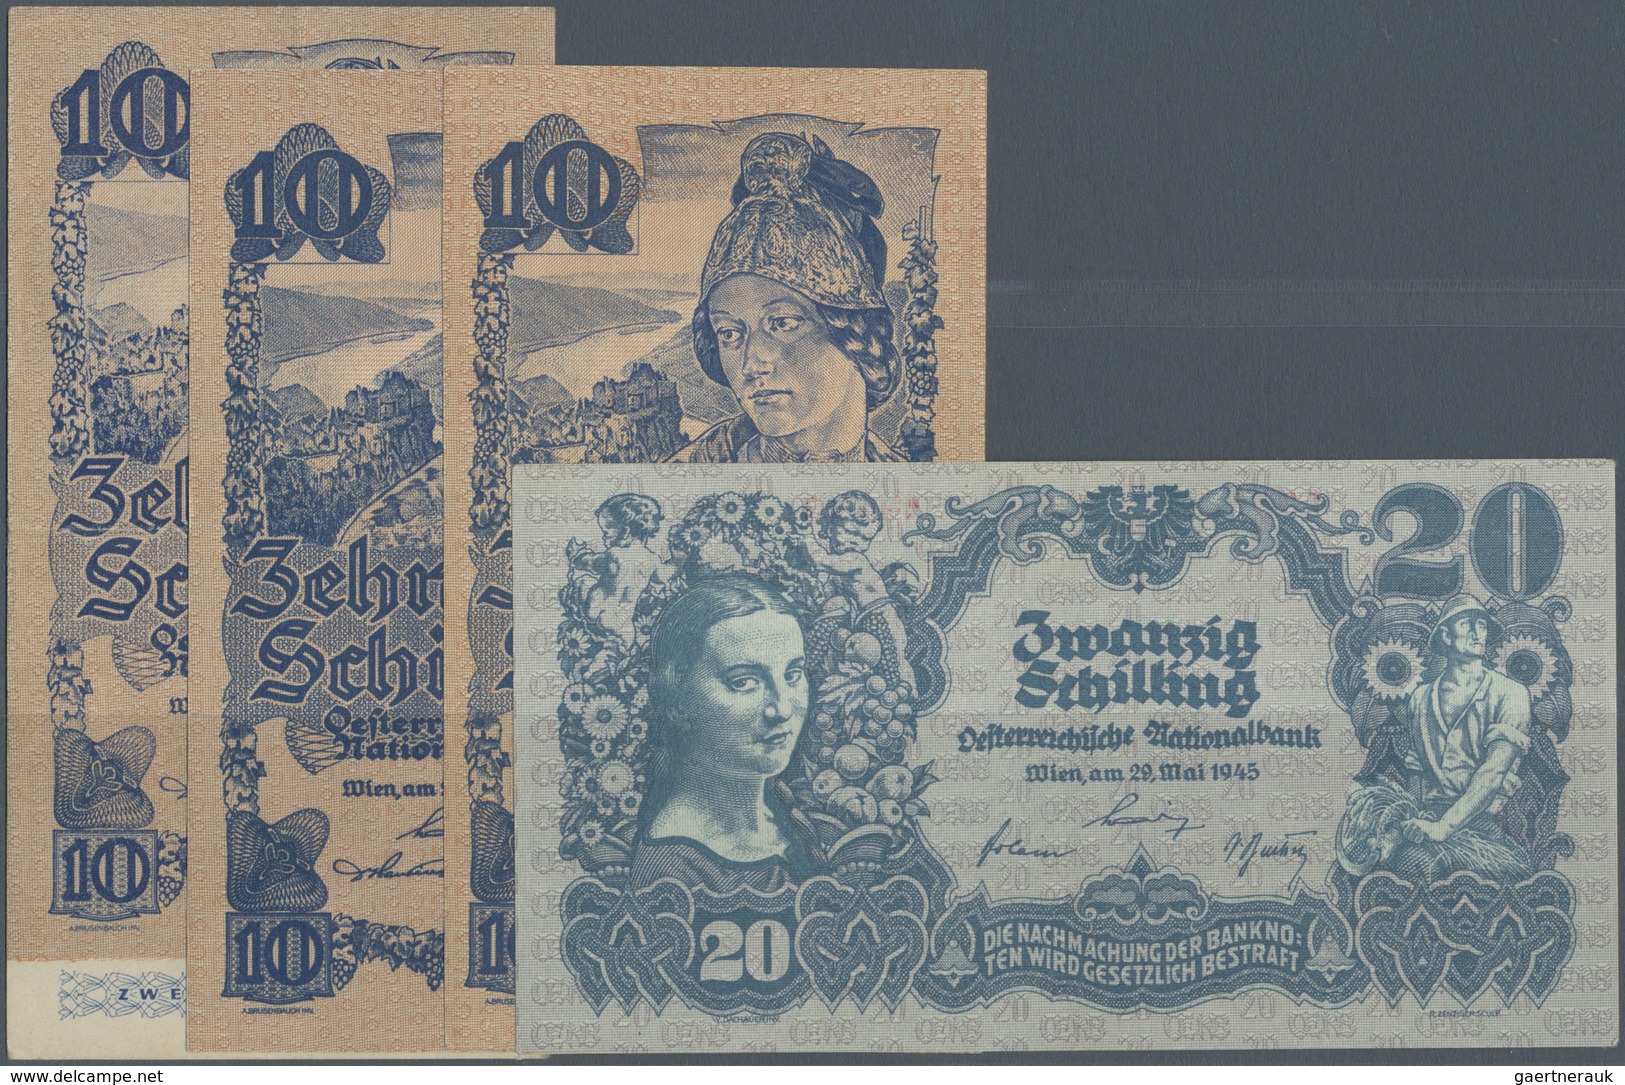 Austria / Österreich: Set Of 4 Notes Containing 10 Schilling (2nd Issue) 1945 (VF) P. 114, 2x 10 Sch - Oesterreich